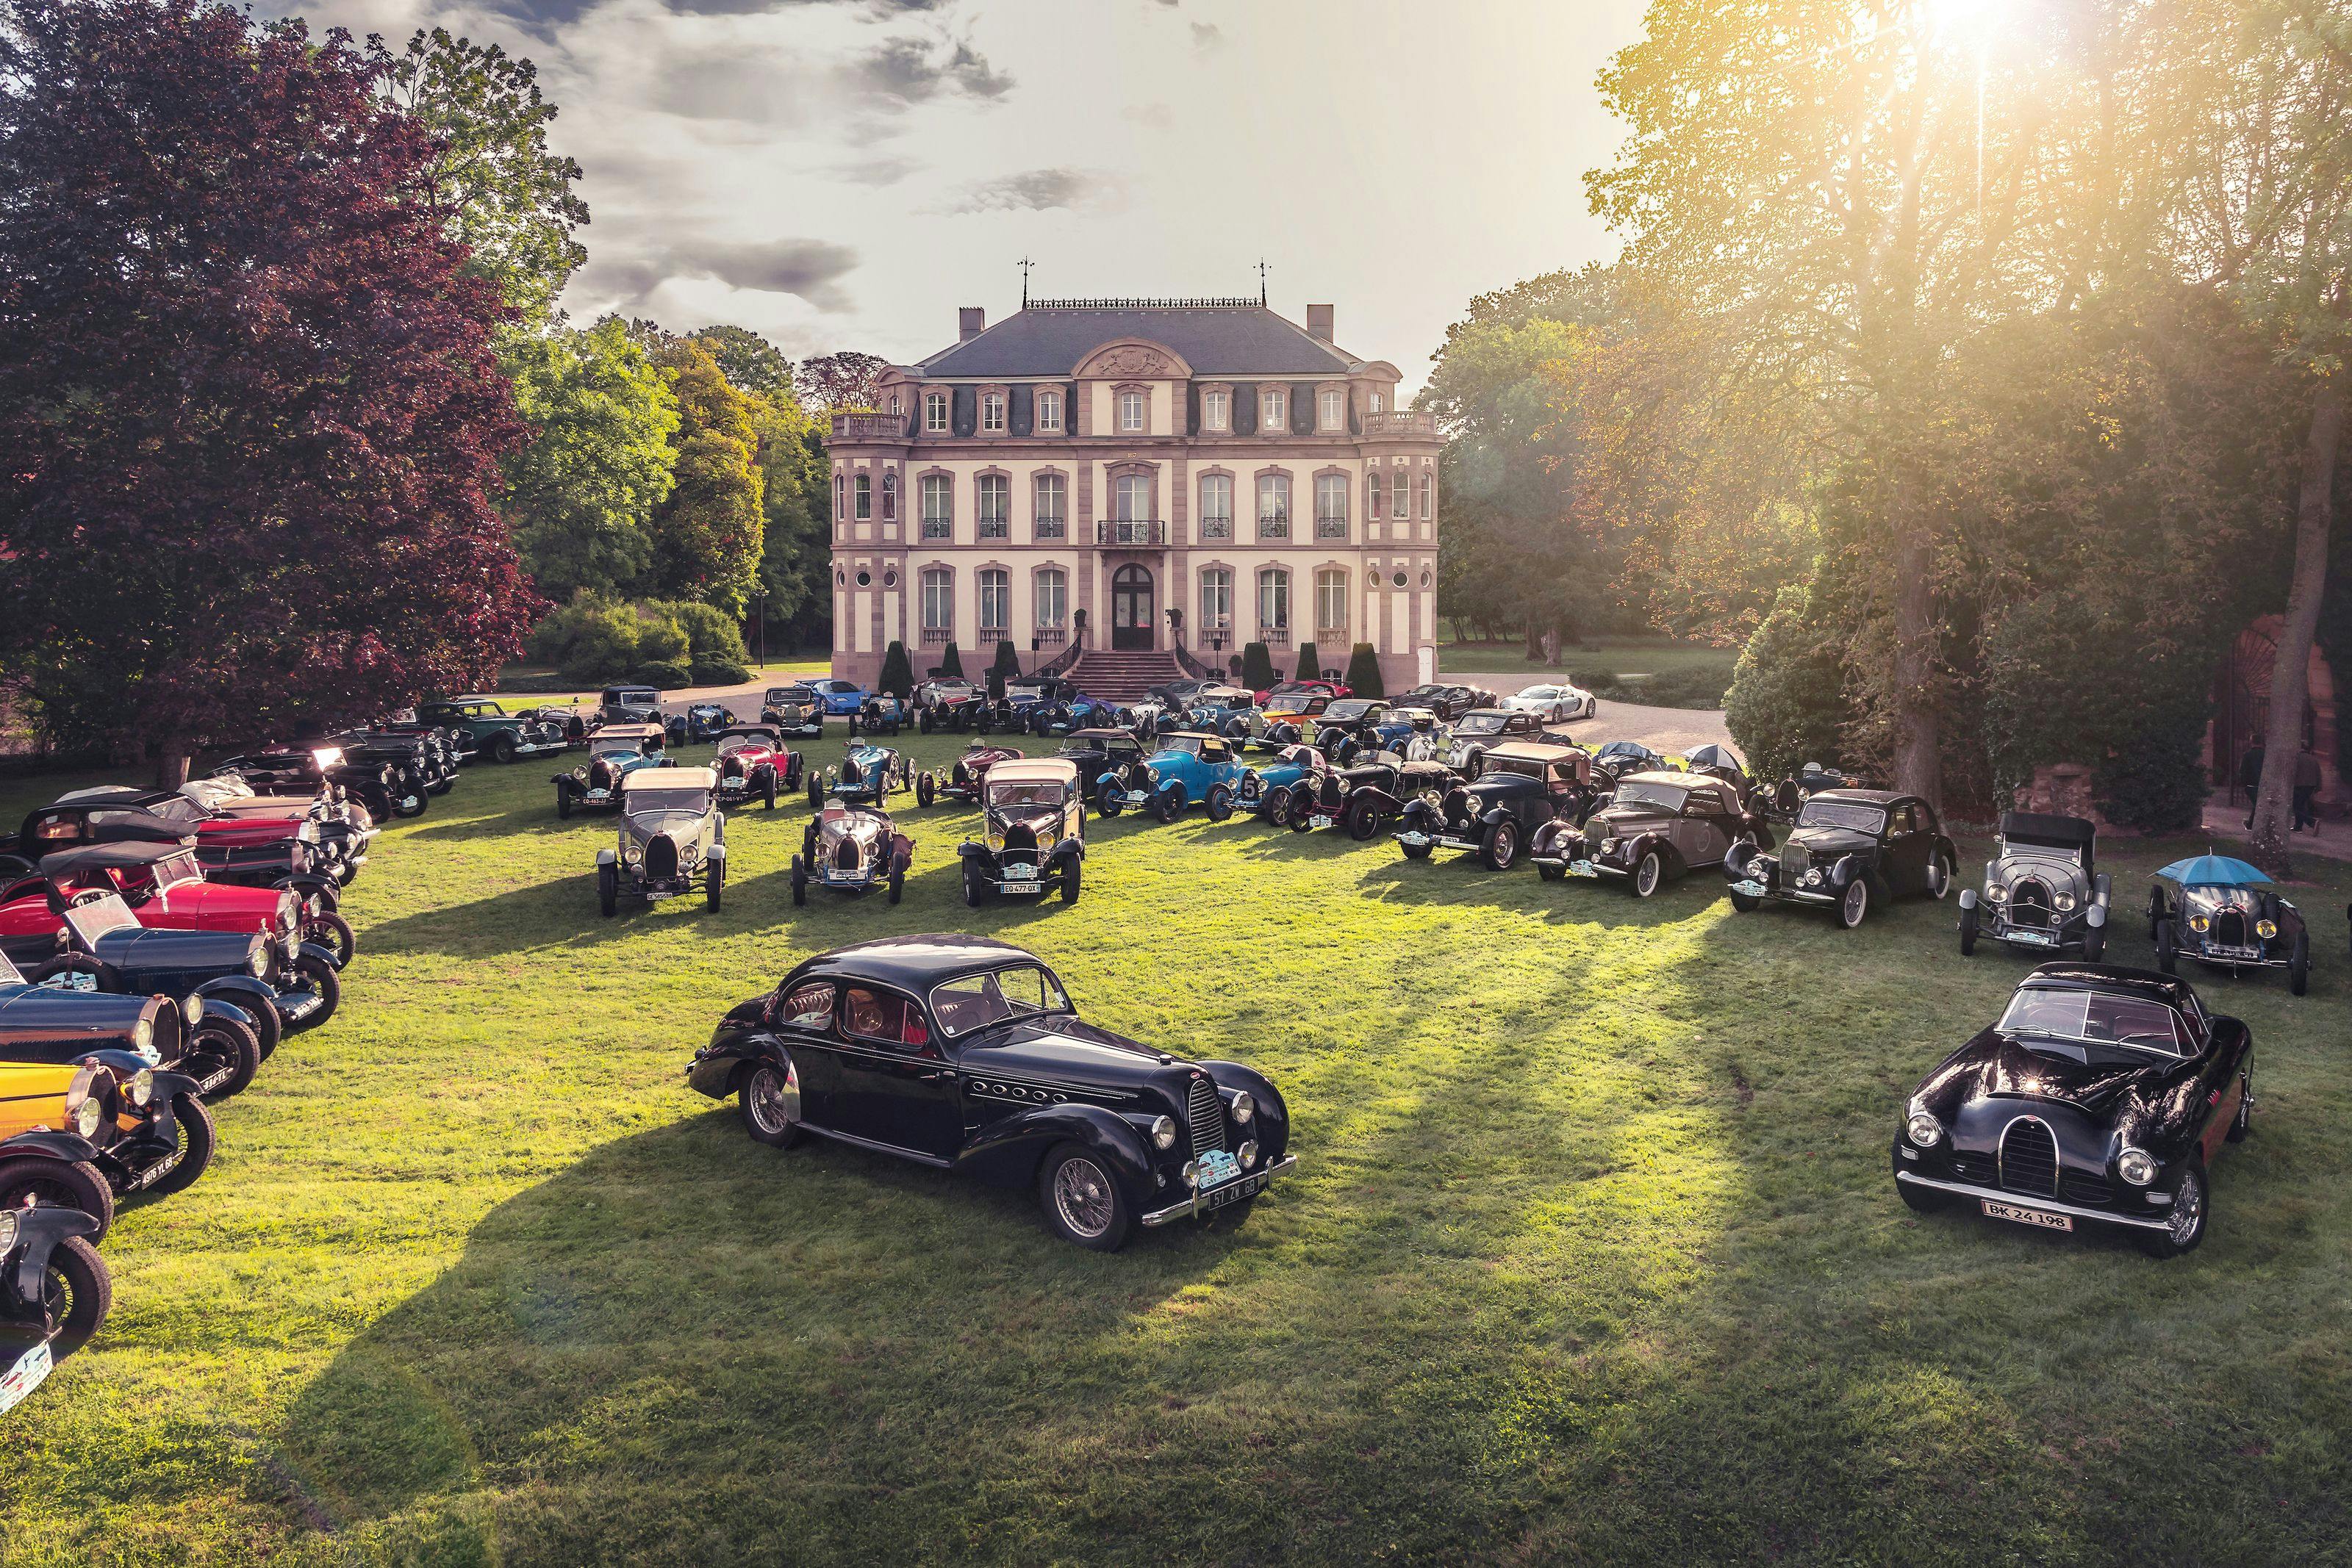 Bugatti Festival feiert den Geburtsort einer legendären Marke